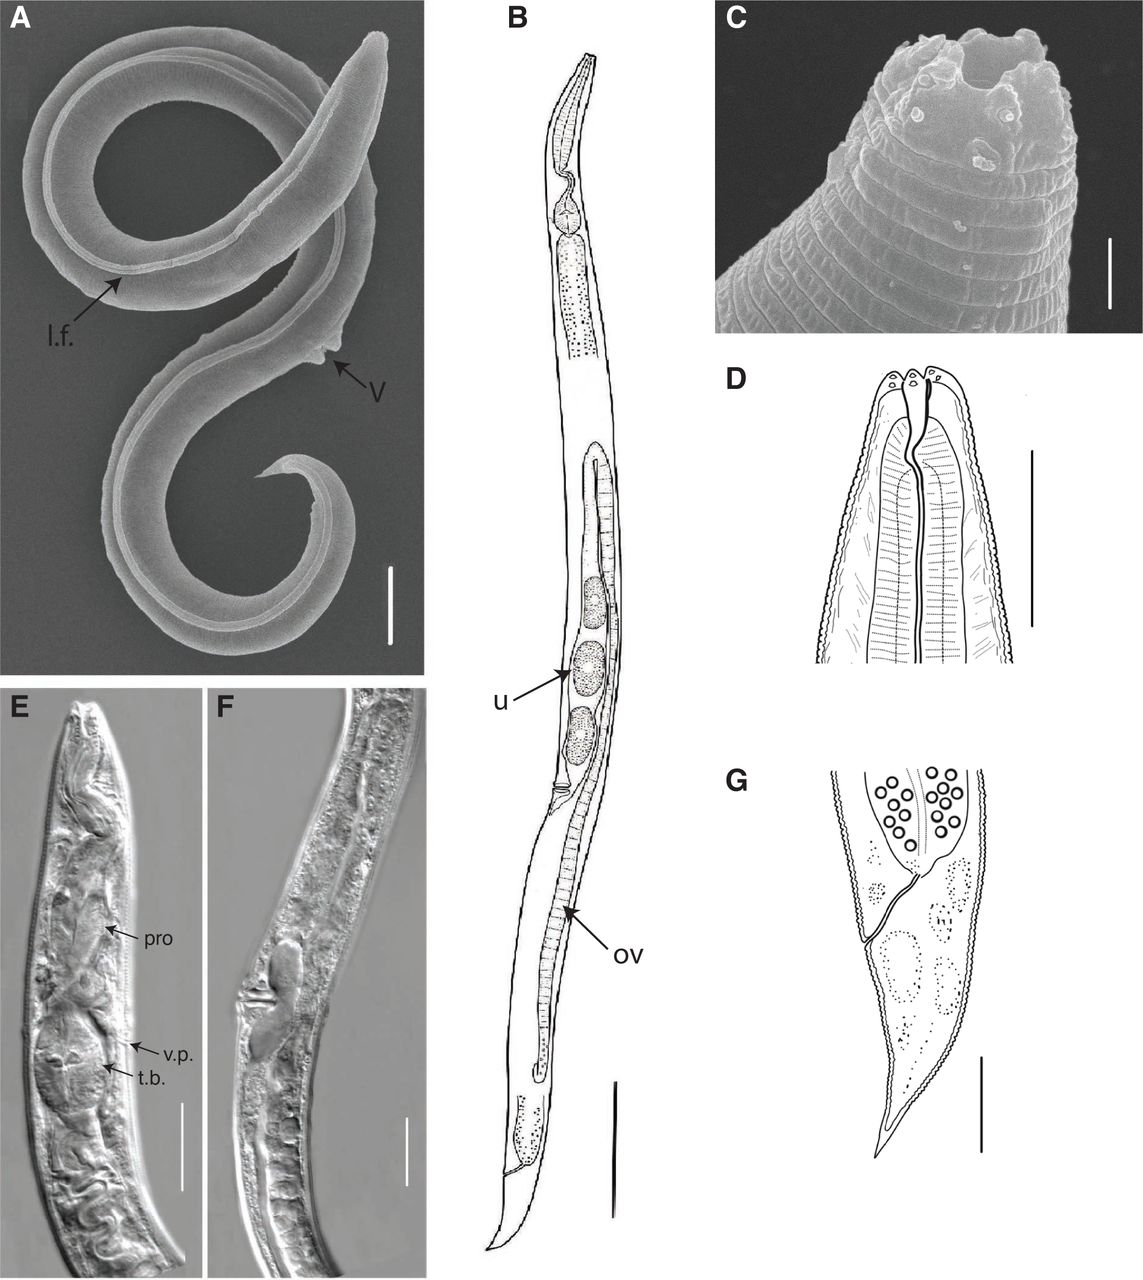 Den gamle sibiriske orm kom tilbage til livet efter 46,000 år og begyndte at formere sig! 2